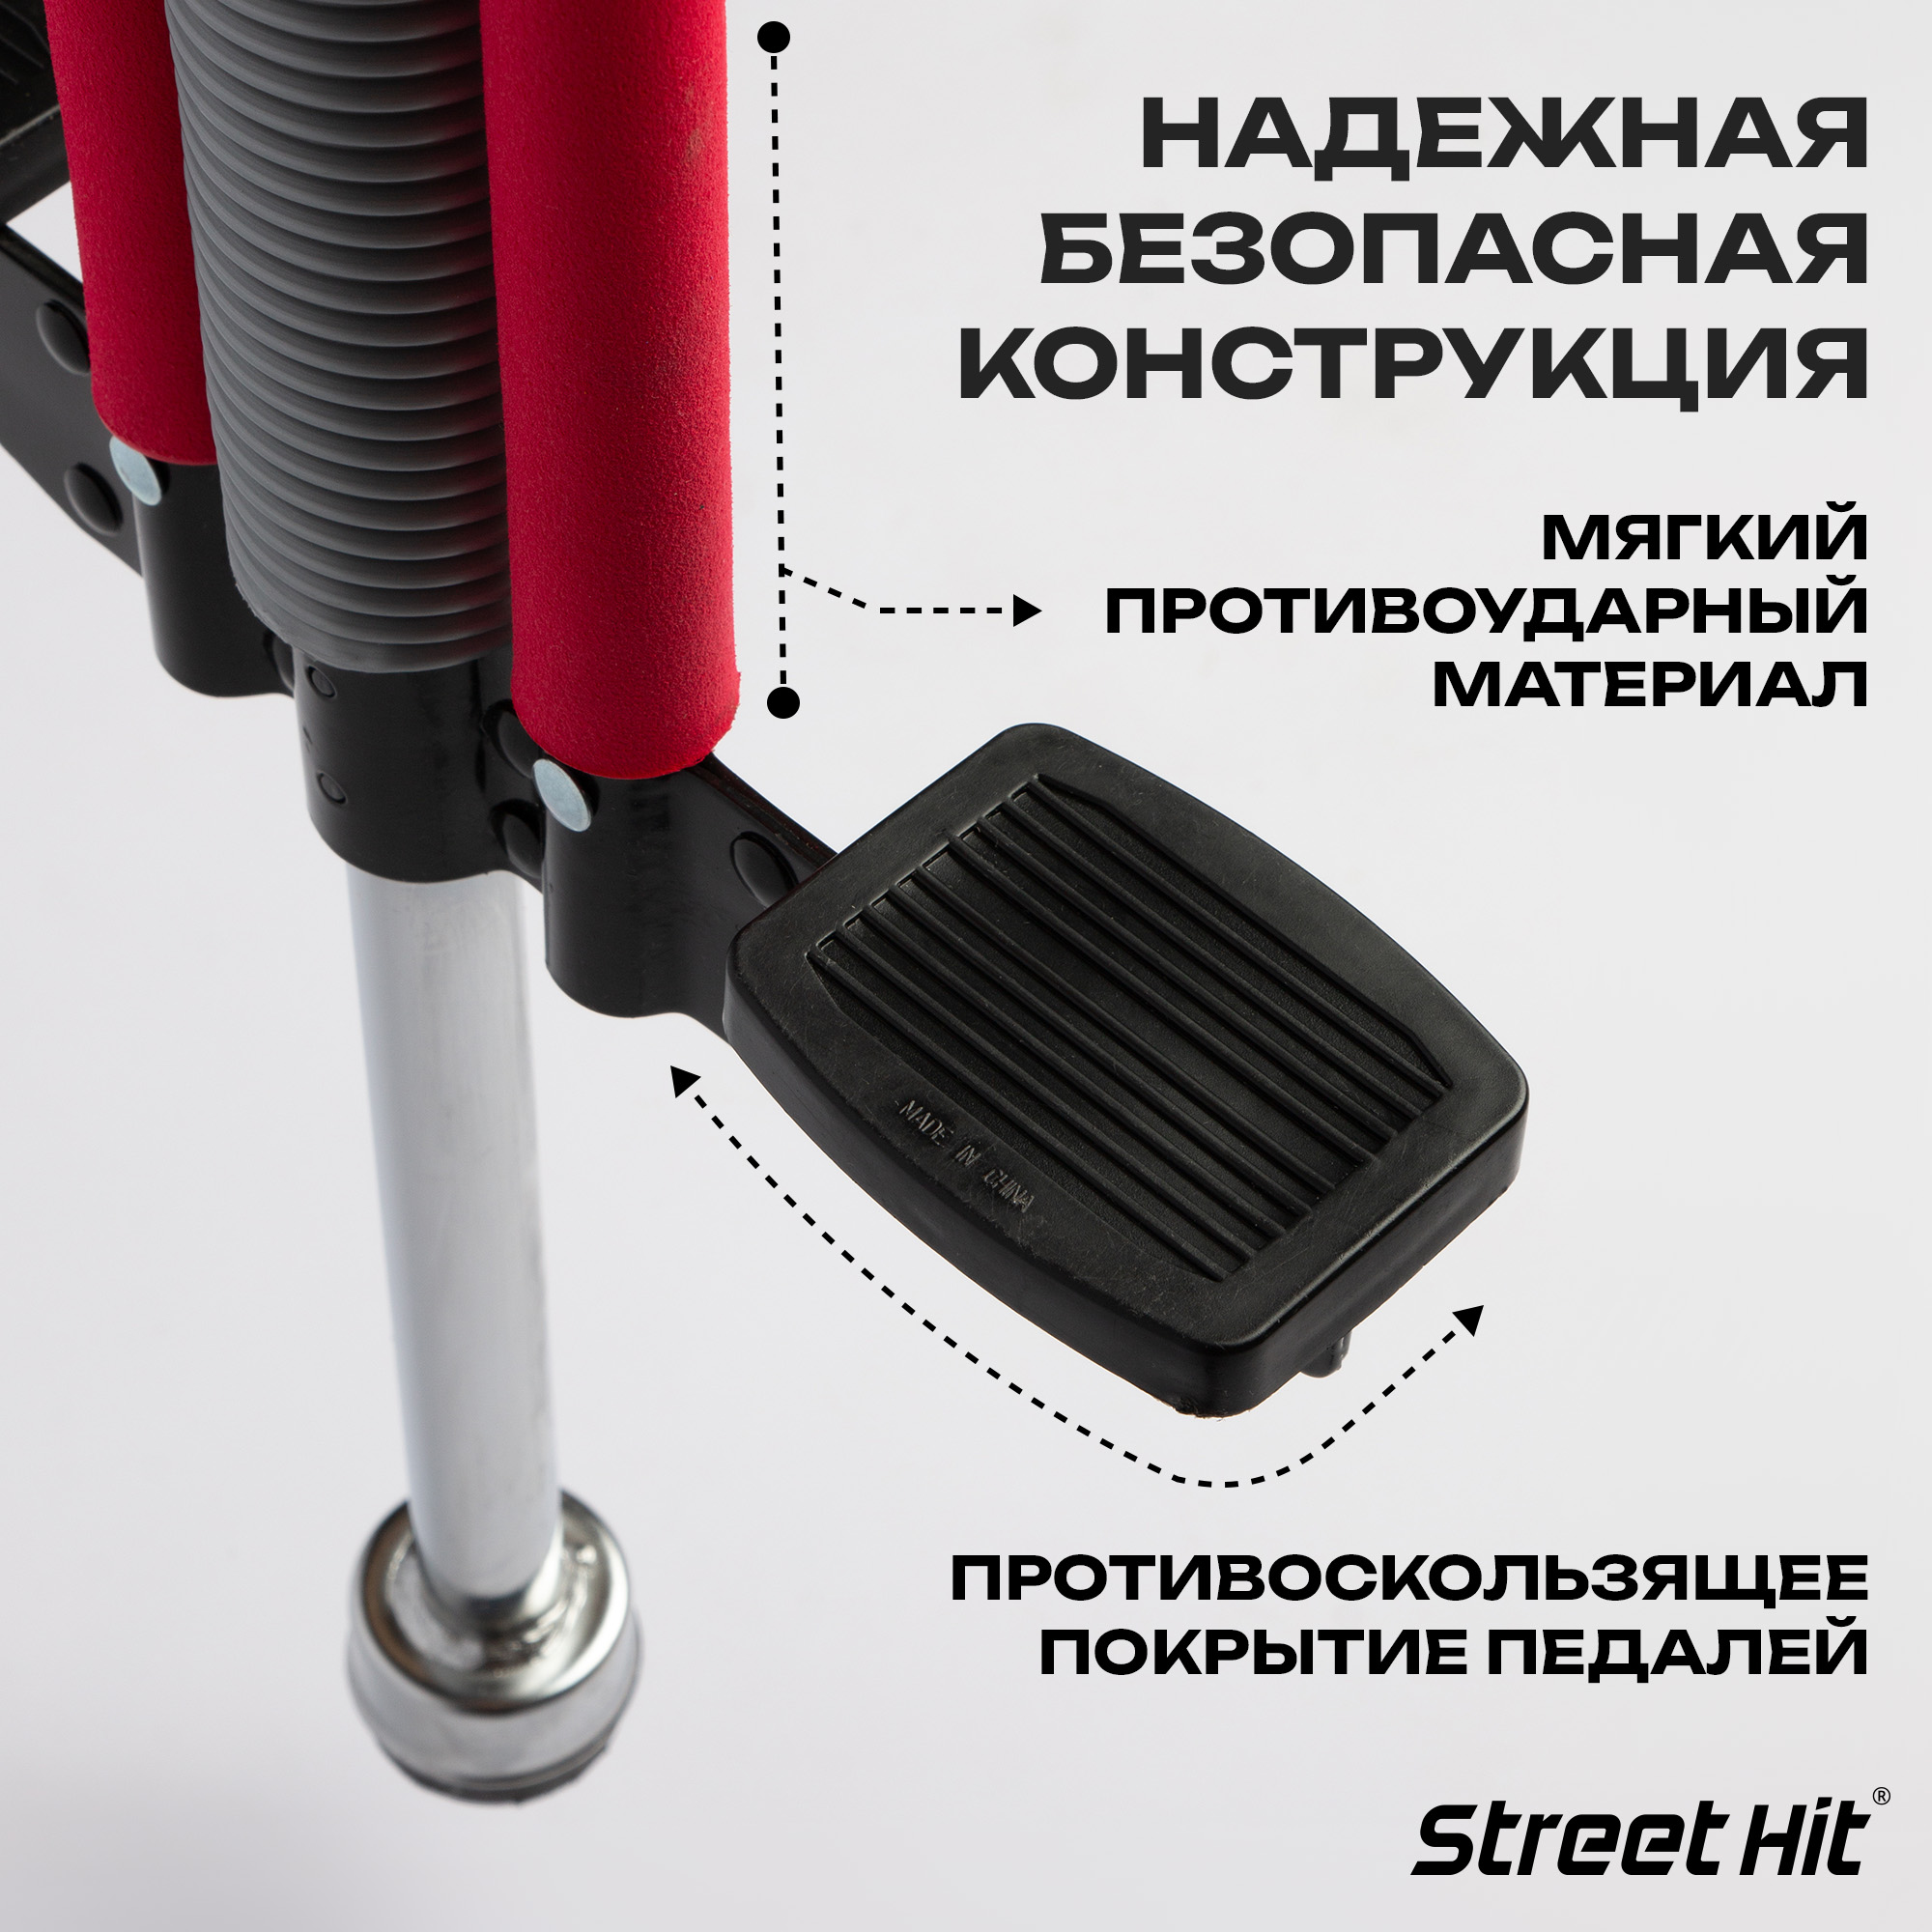 Тренажер-кузнечик Street Hit Pogo Stick Maxi до 50 кг Красный - фото 2